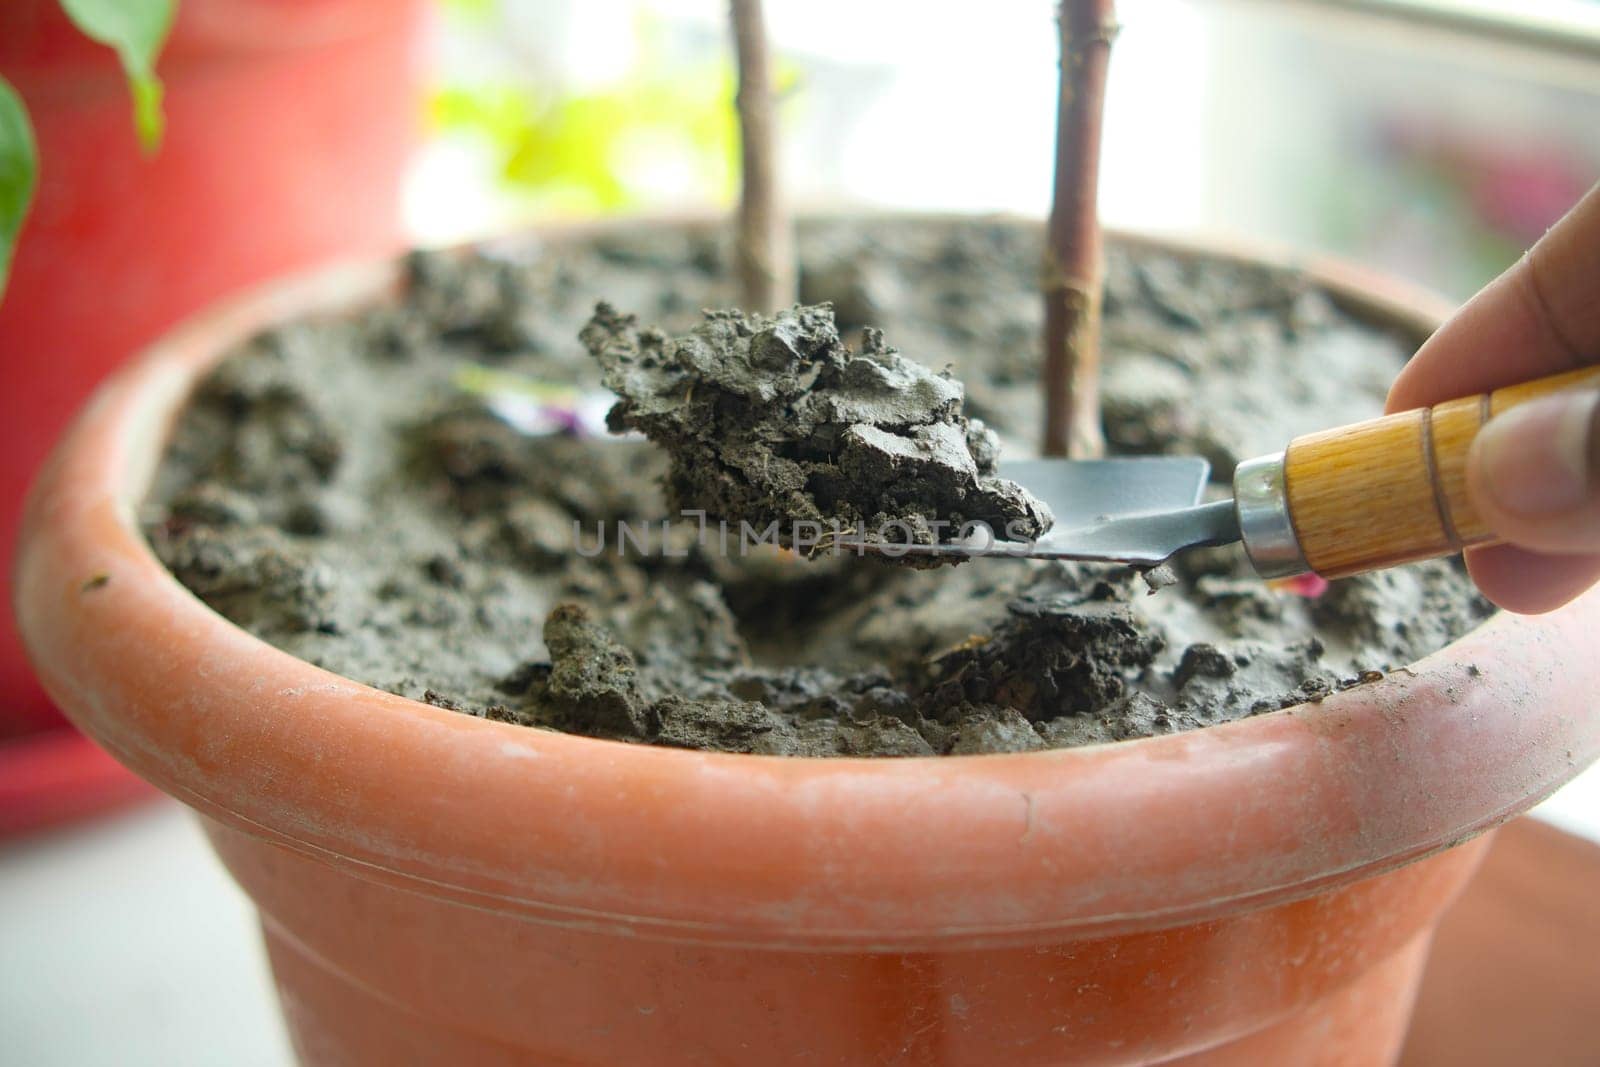 holding Garden shovel with fertile soil, Planting a small plant on pile of soil,.